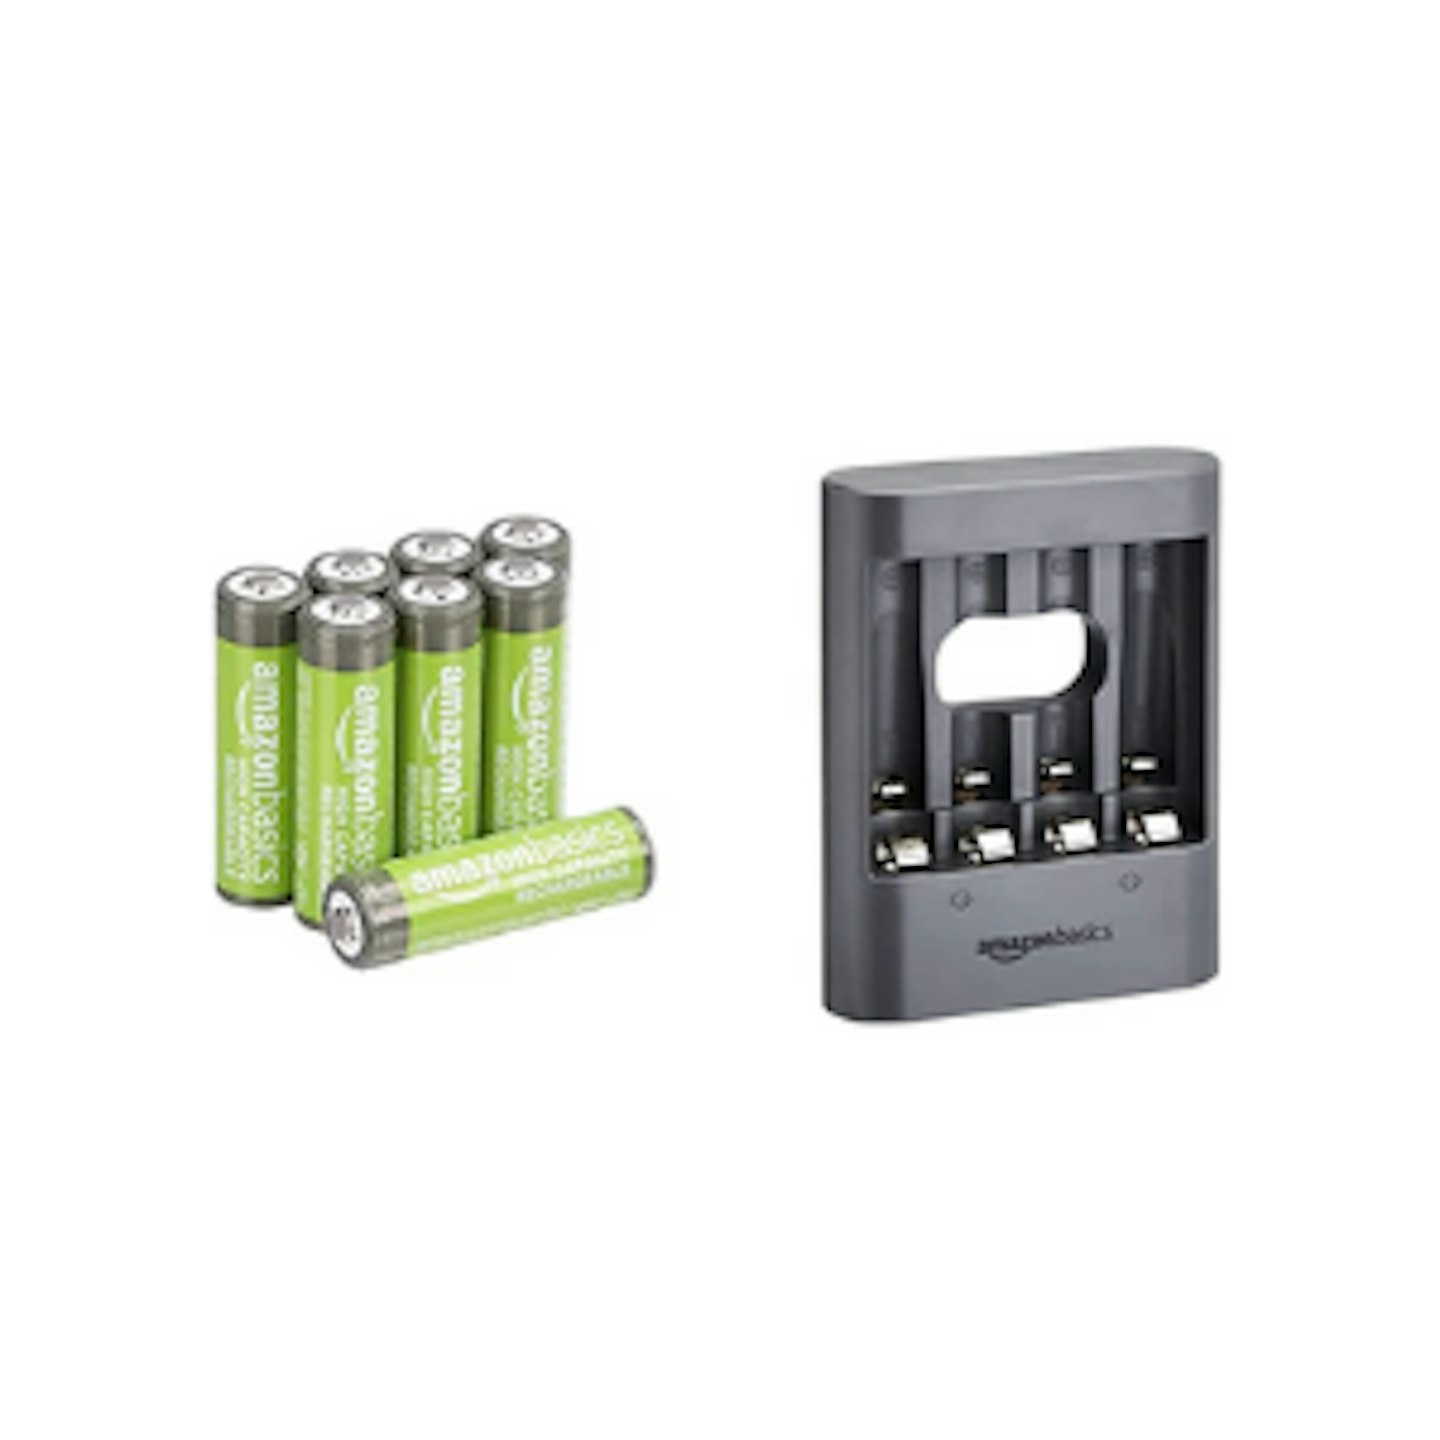 Amazon Basics AAA rechargeable batteries